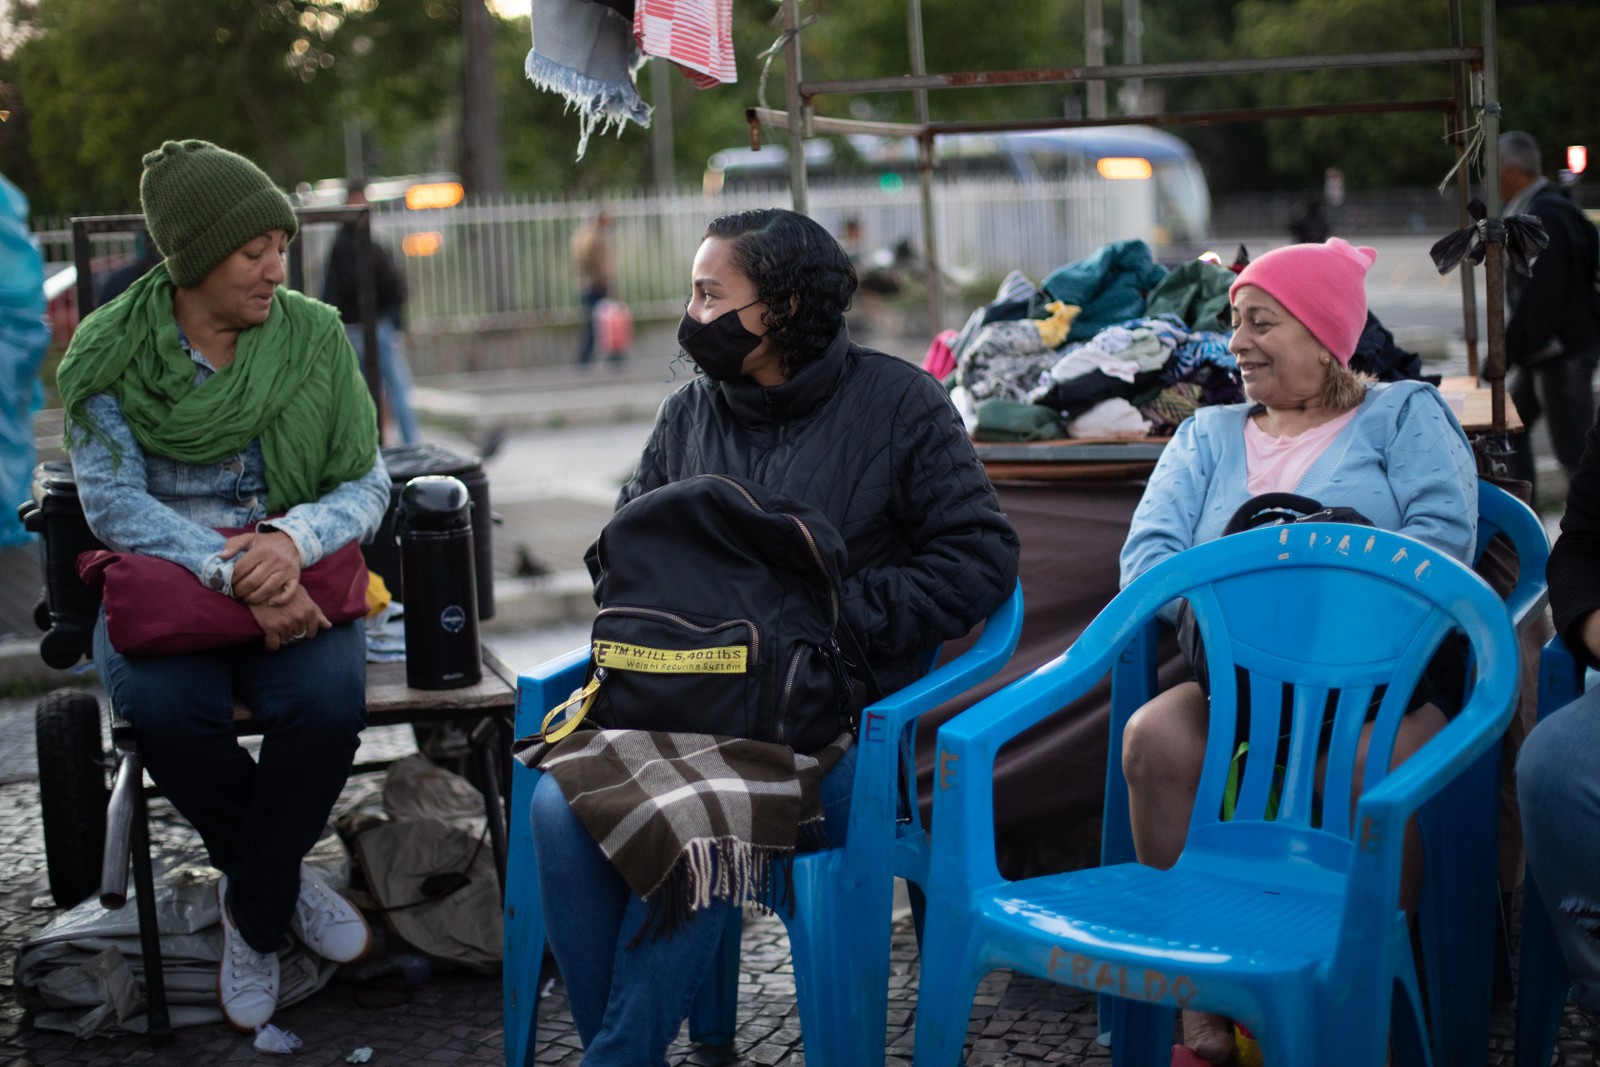 Cariocas encasacados conversam na calçada — Foto: Brenno Carvalho / Agência O Globo